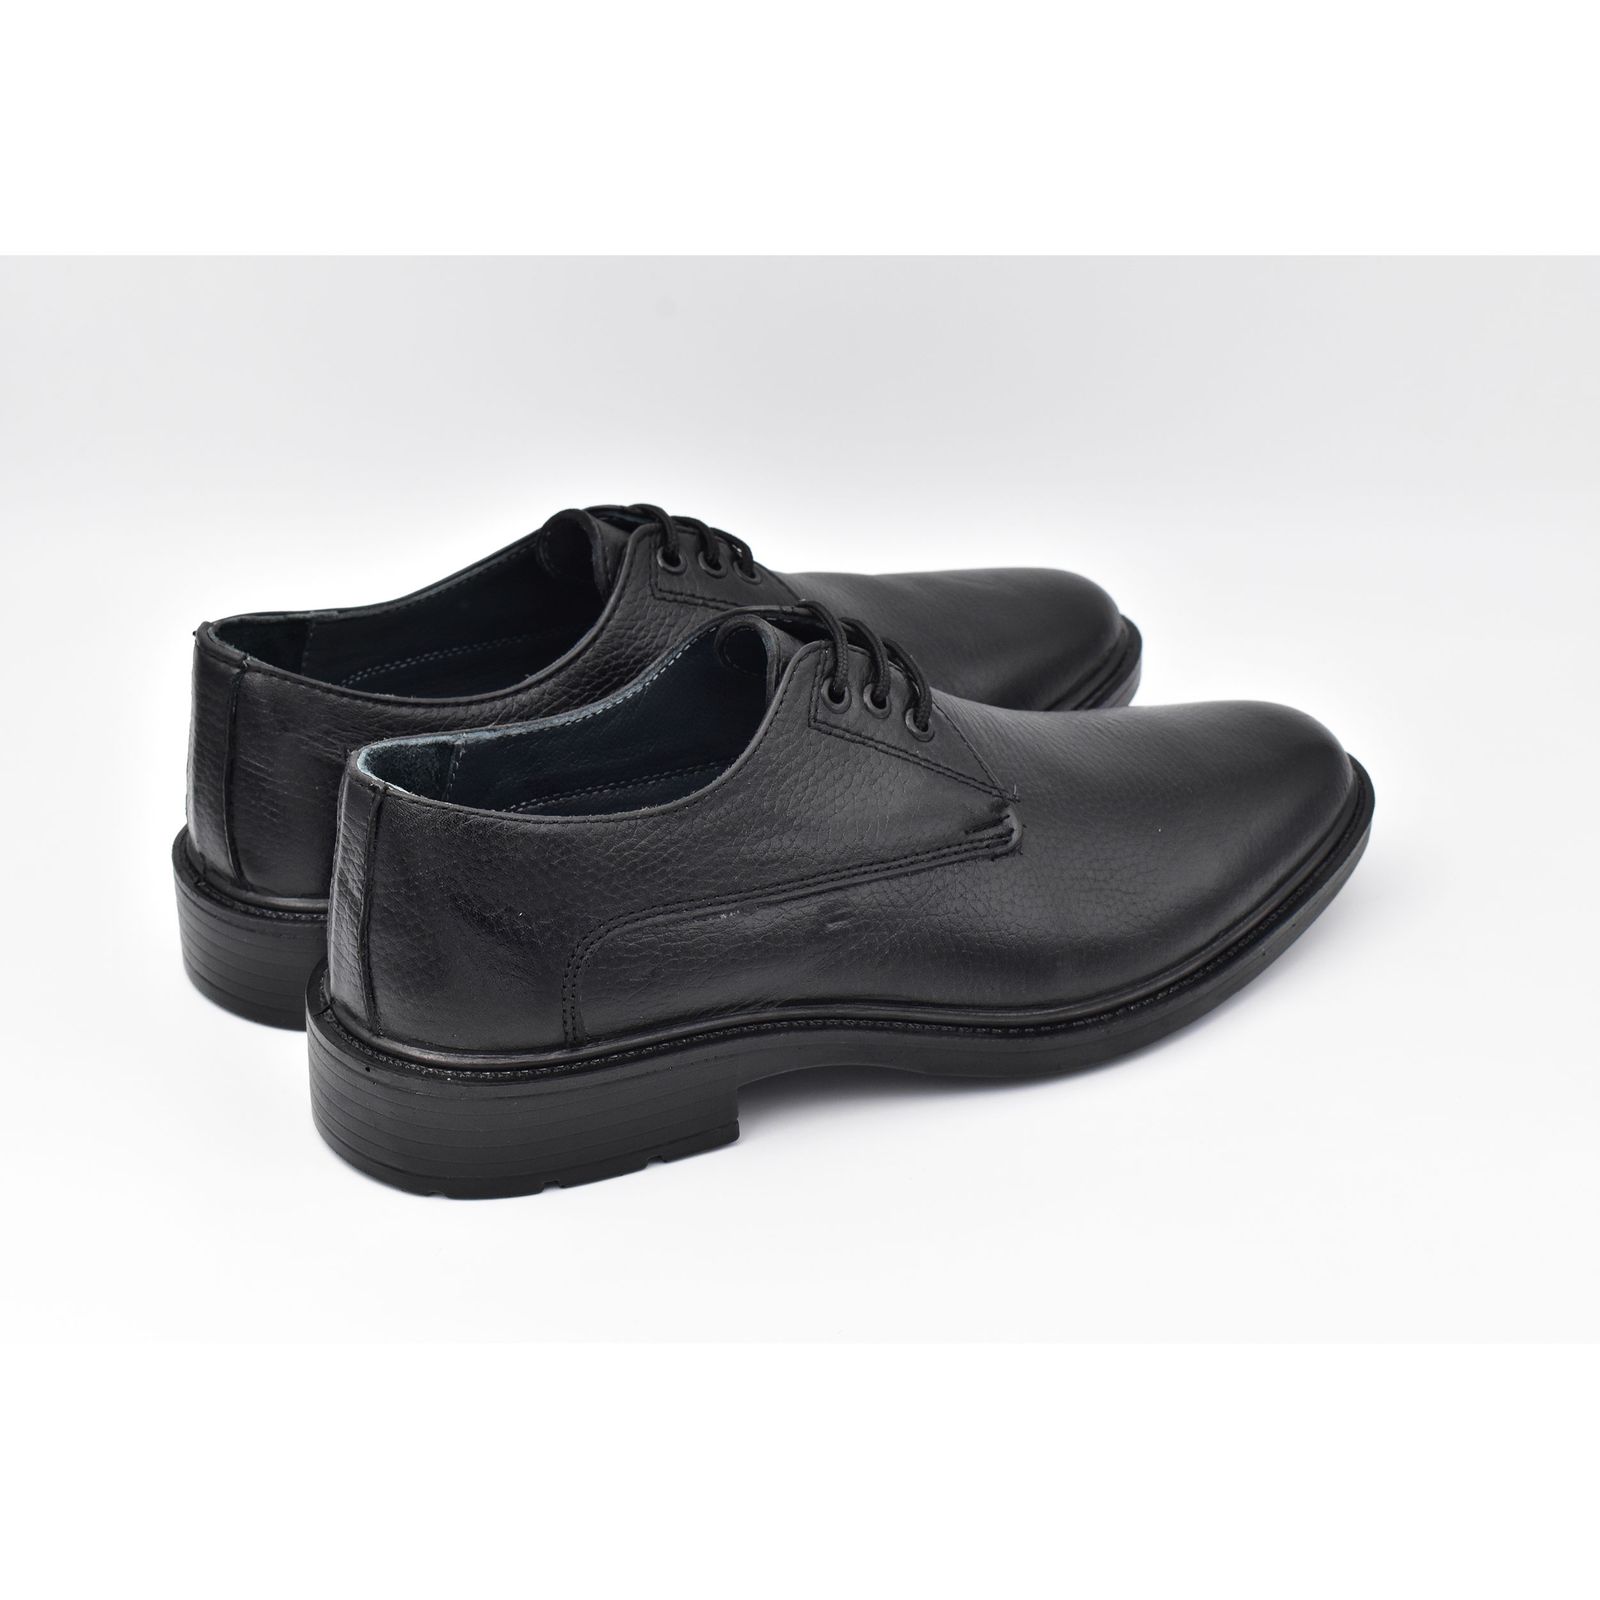 کفش مردانه پاما مدل Malavan کد G1180 -  - 8